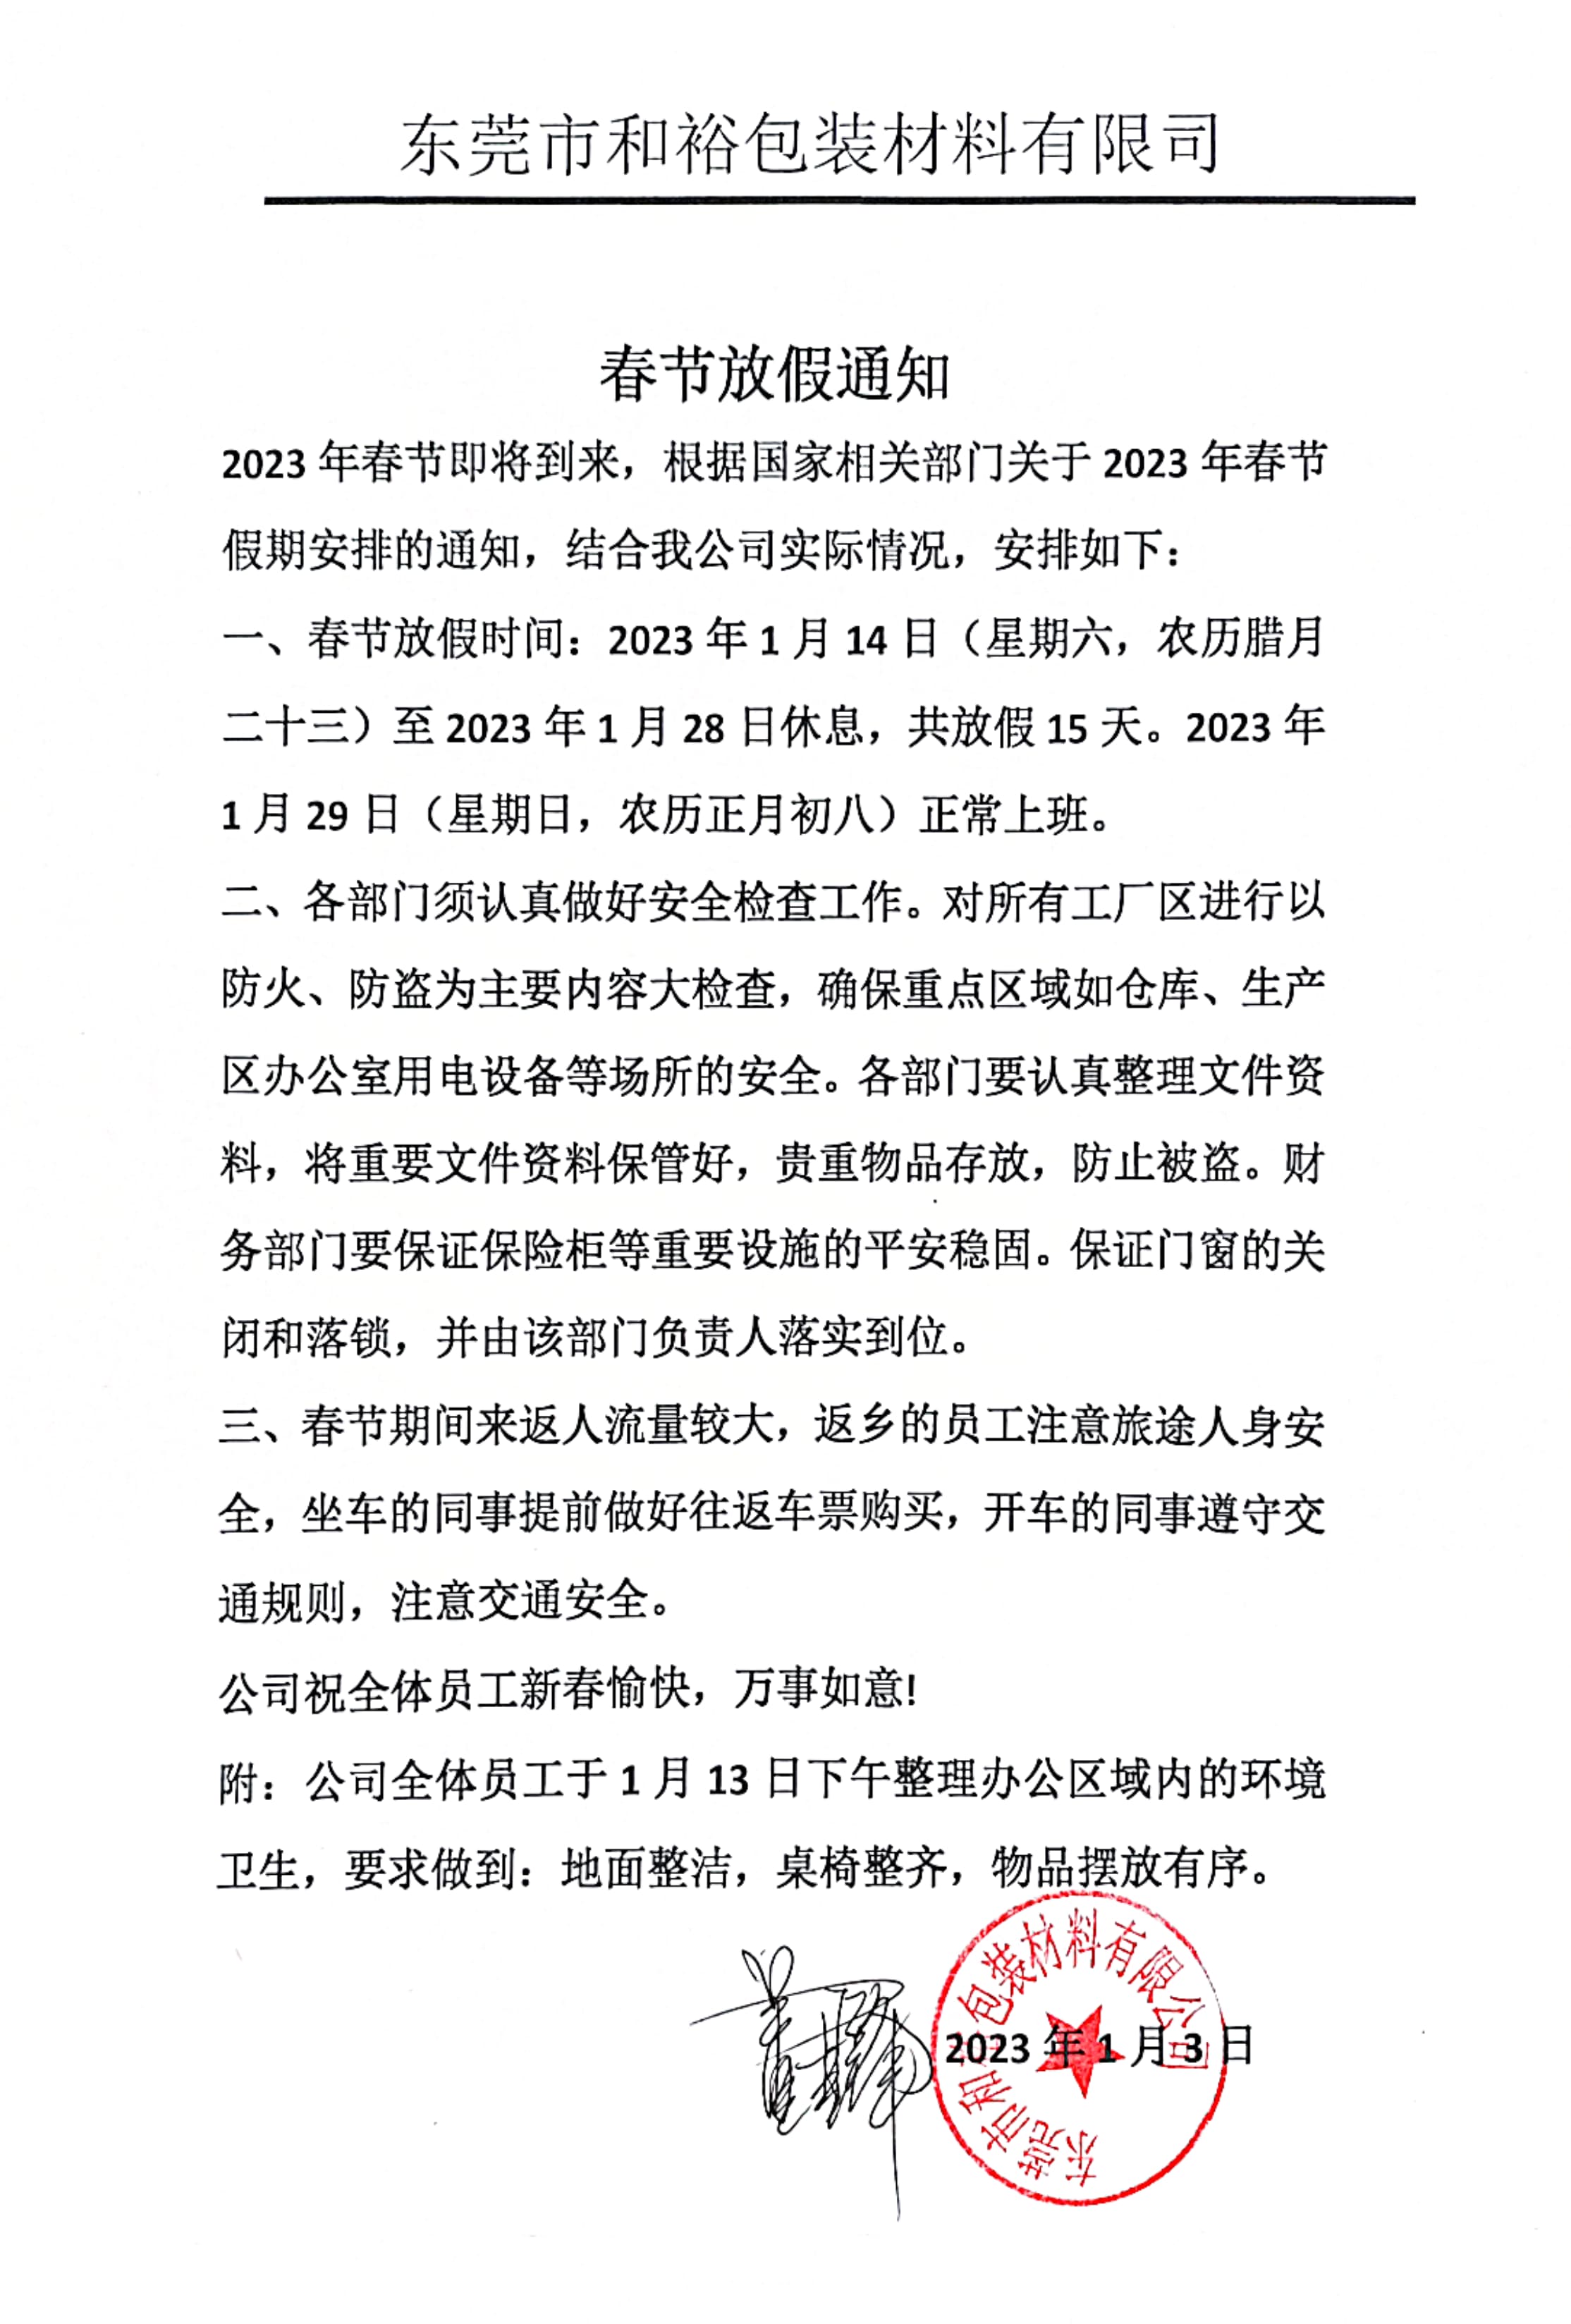 许昌市2023年和裕包装春节放假通知